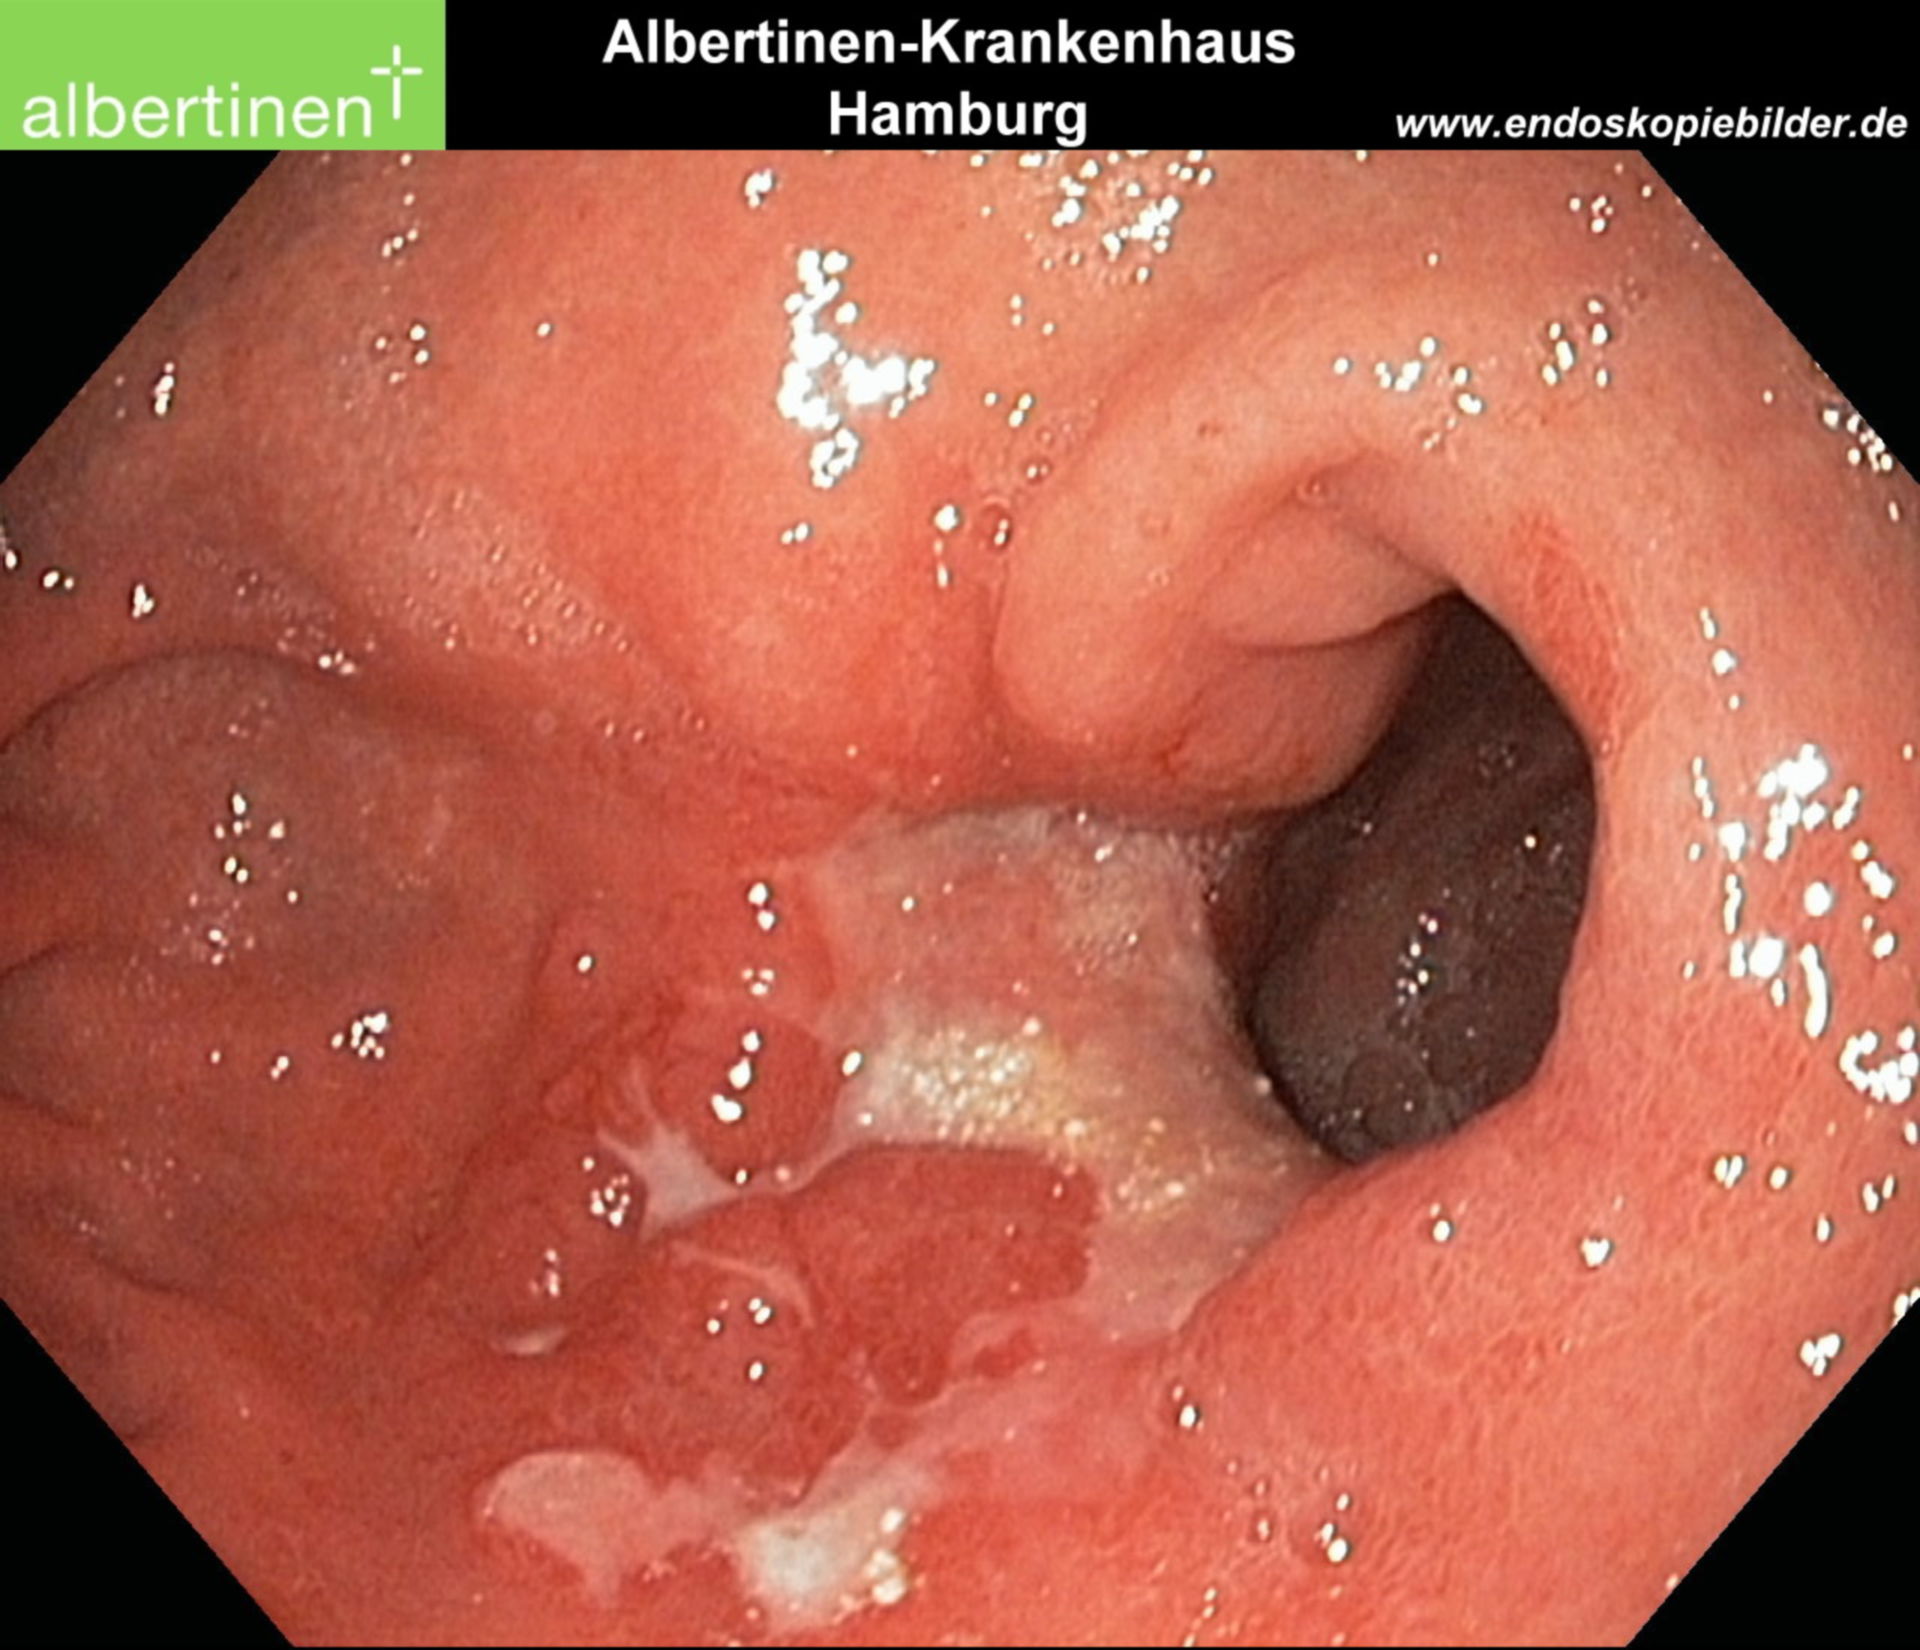 Endoscopia: carcinoma gastrico ulceroso